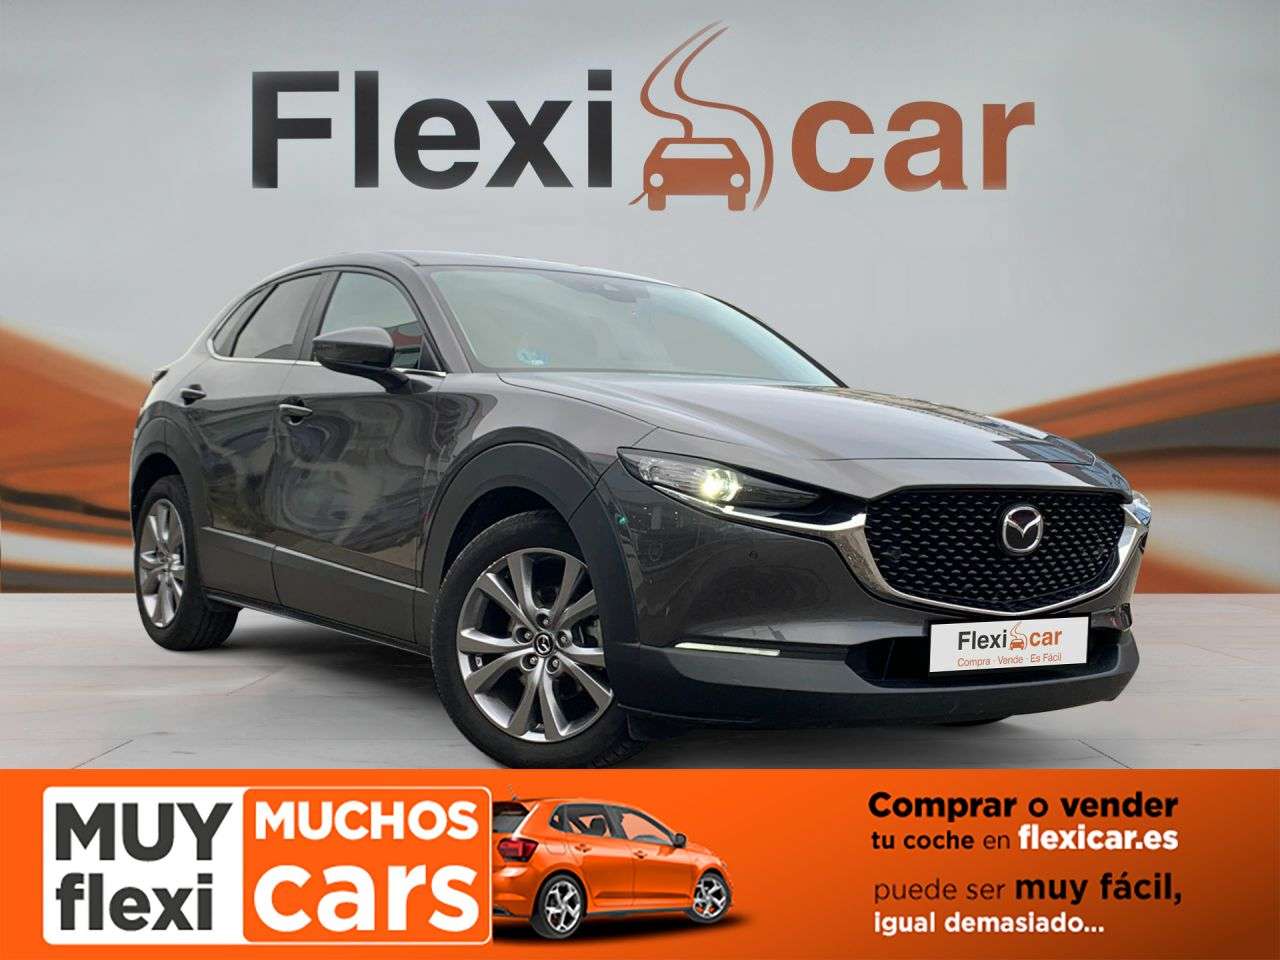 Mazda CX-30 Off-Road/Pick-up in Grey used in PATERNA for € 19,990.-